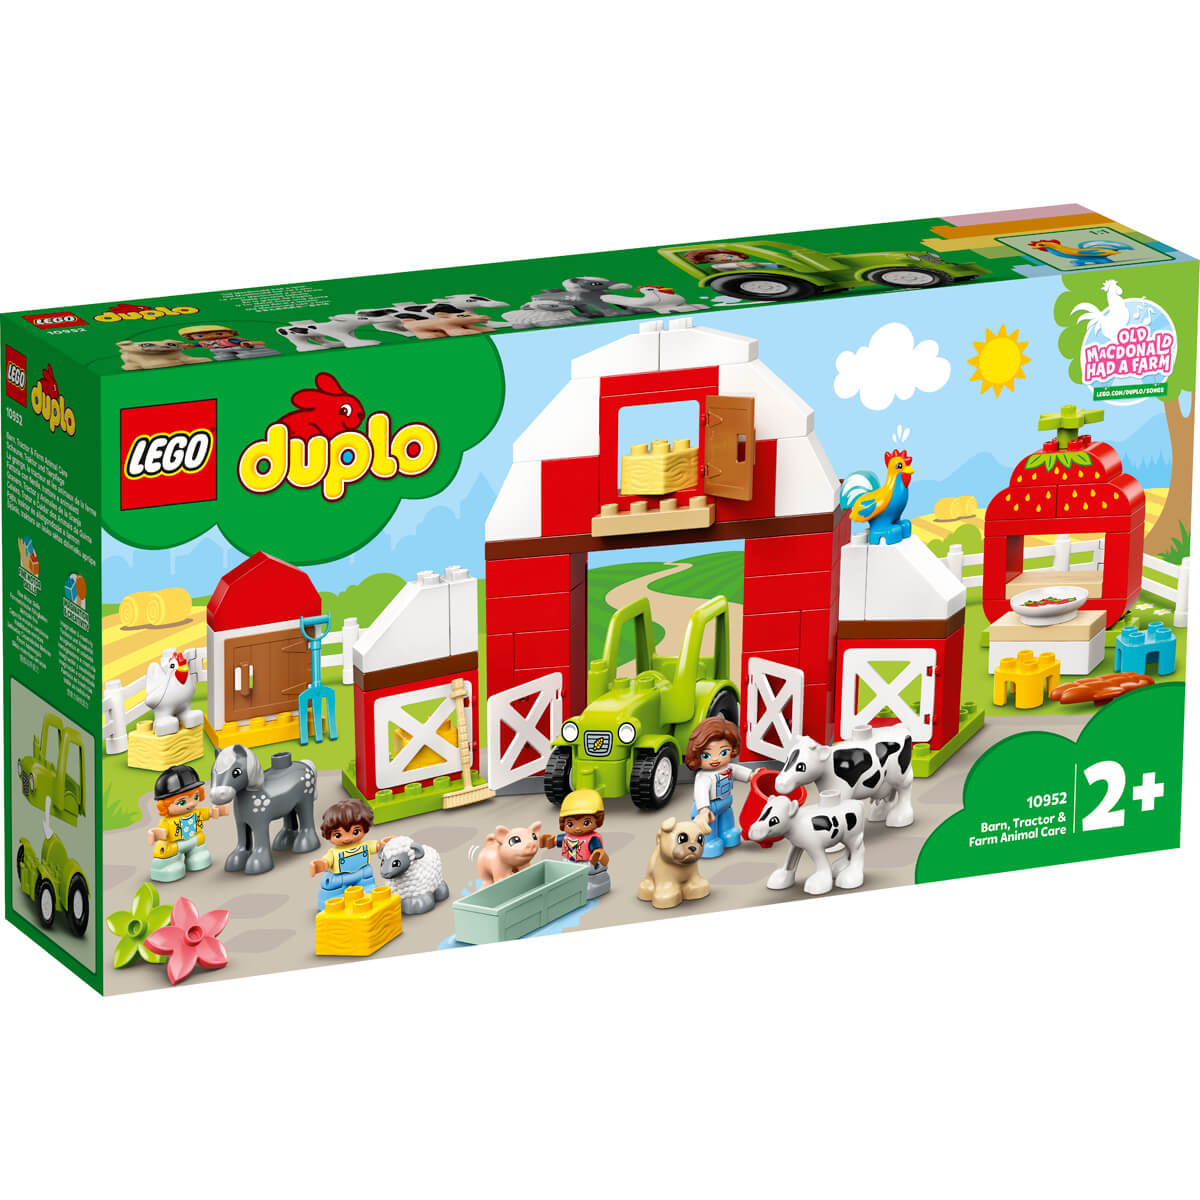 ΠΑΙΔΙ | Παιχνίδια | LEGO | DUPLO 10952 Barn, Tractor & Farm Animal Care